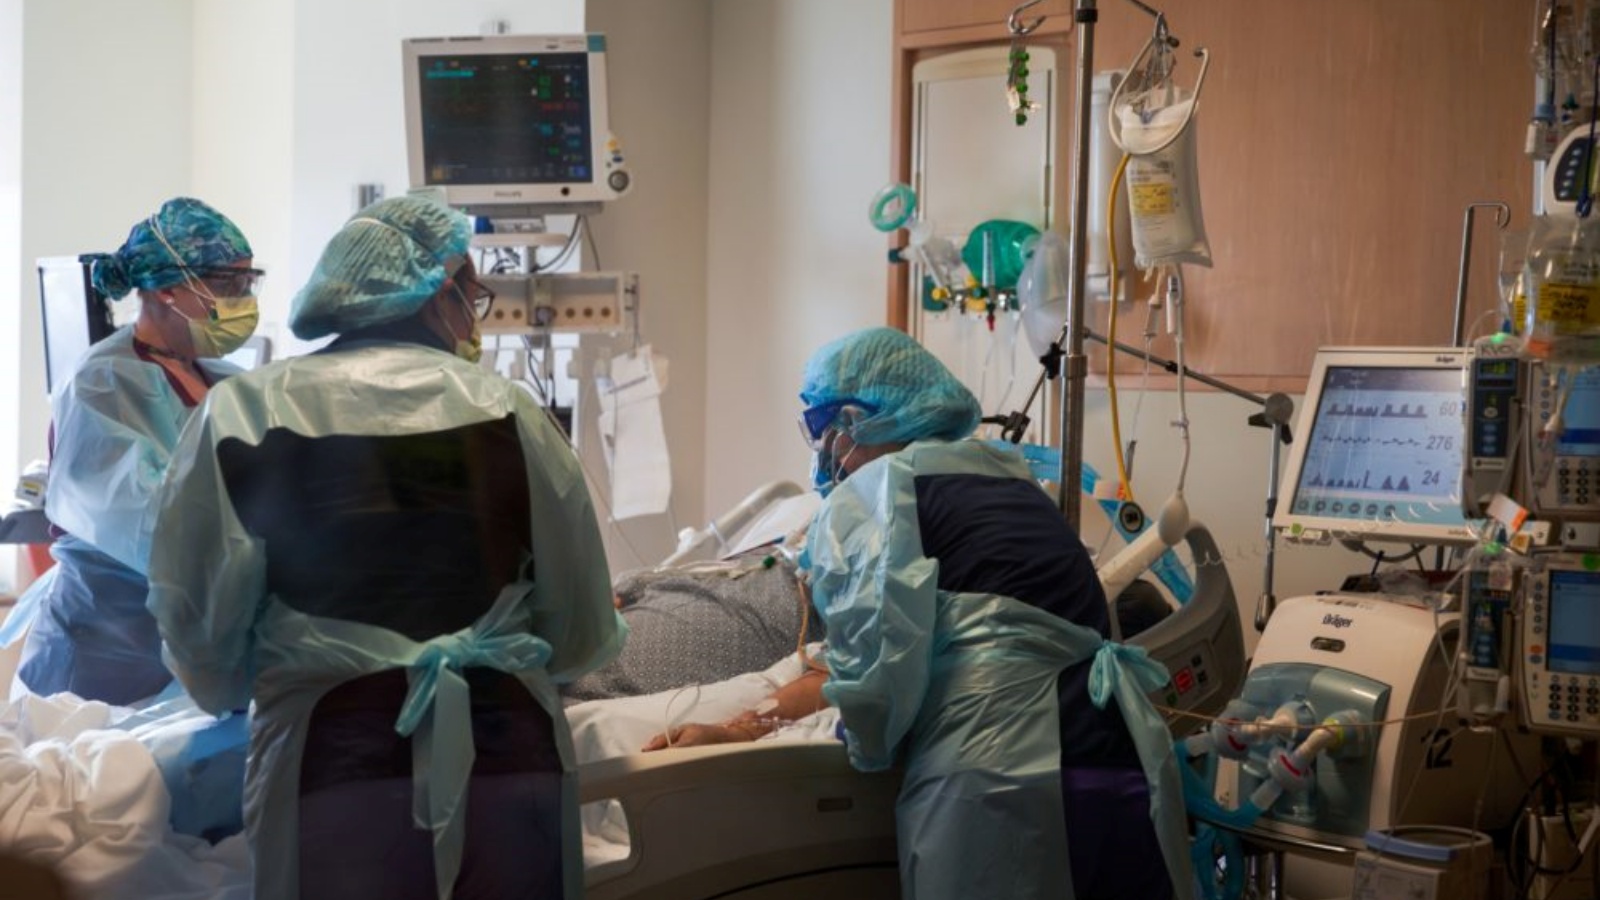 ممرضات يعتنين بمريض قلب مصاب بفيروس كورونا المستجد في مستشفى UMass Memorial في 4 ديسمبر 2020 في ورسستر، ماساتشوستس